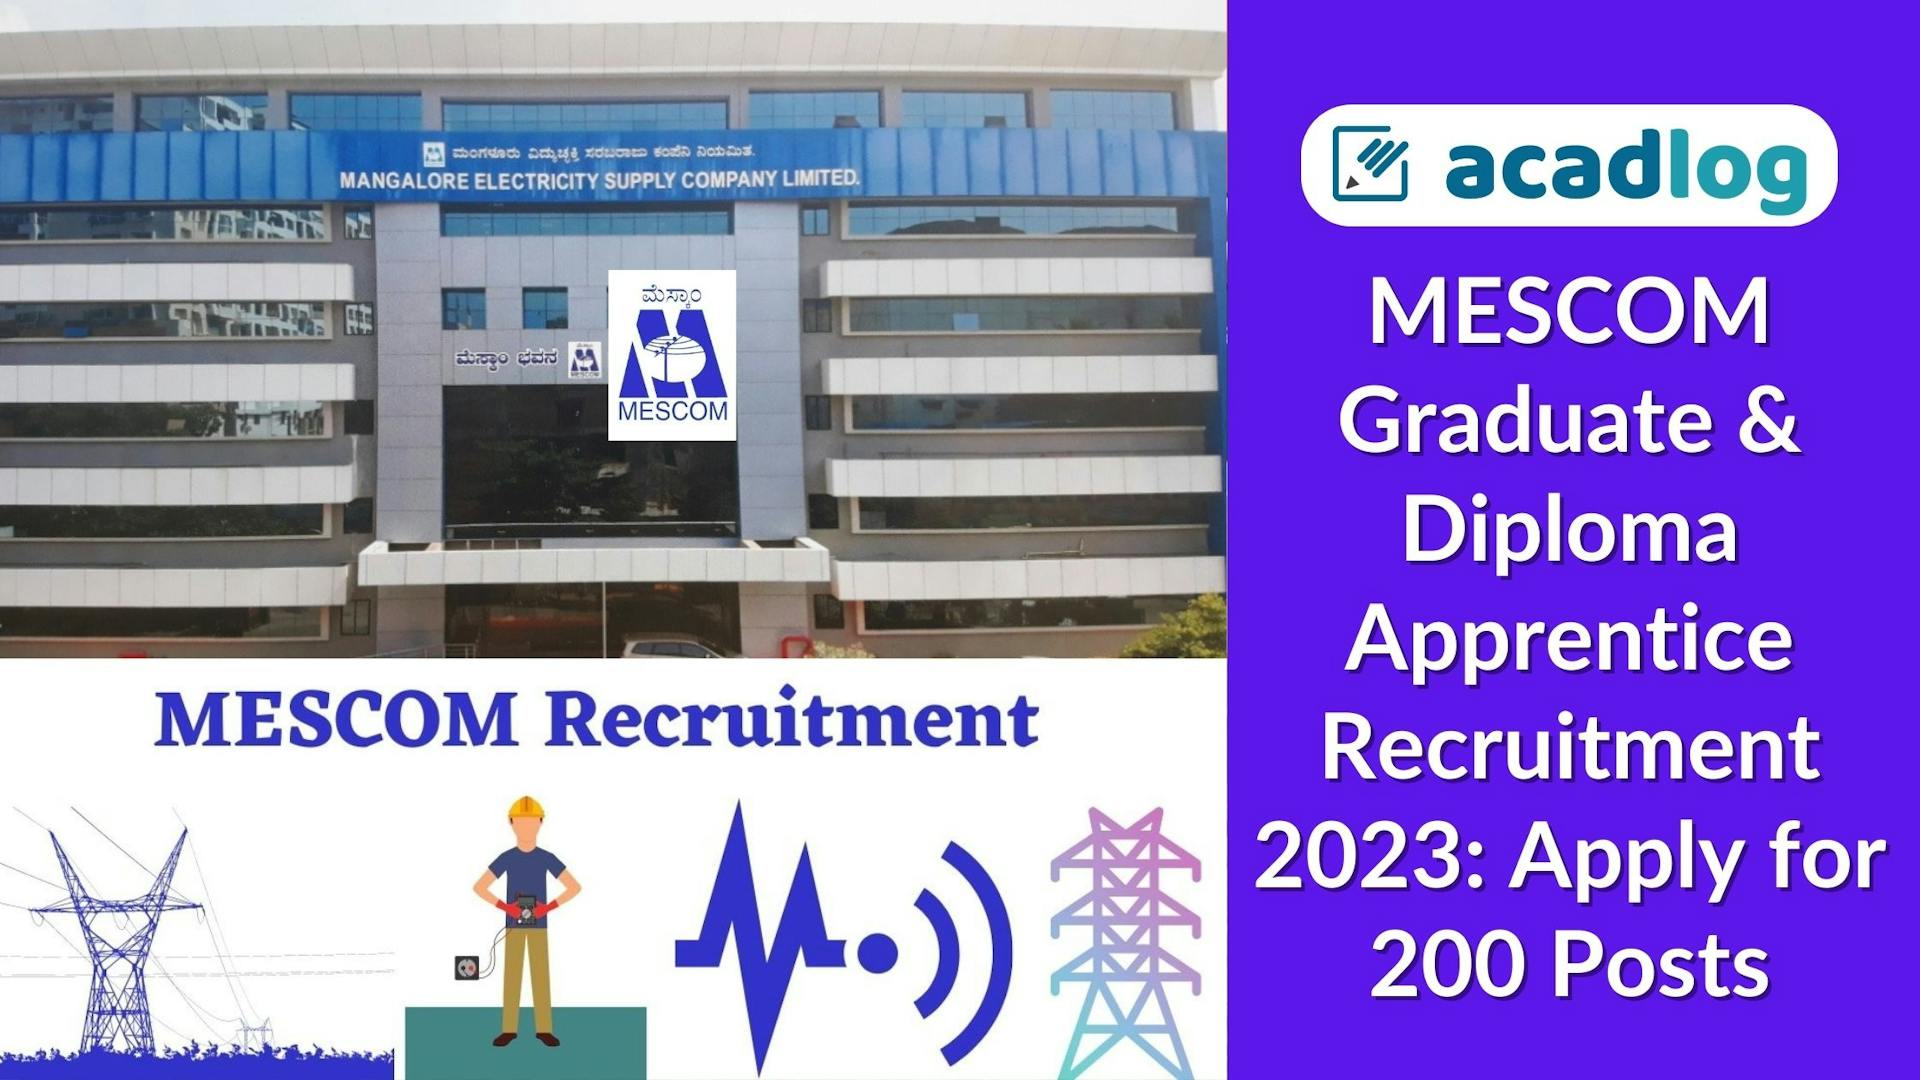 MESCOM Graduate & Diploma Apprentice Jobs 2023: Recruitment for 200 Vacancies